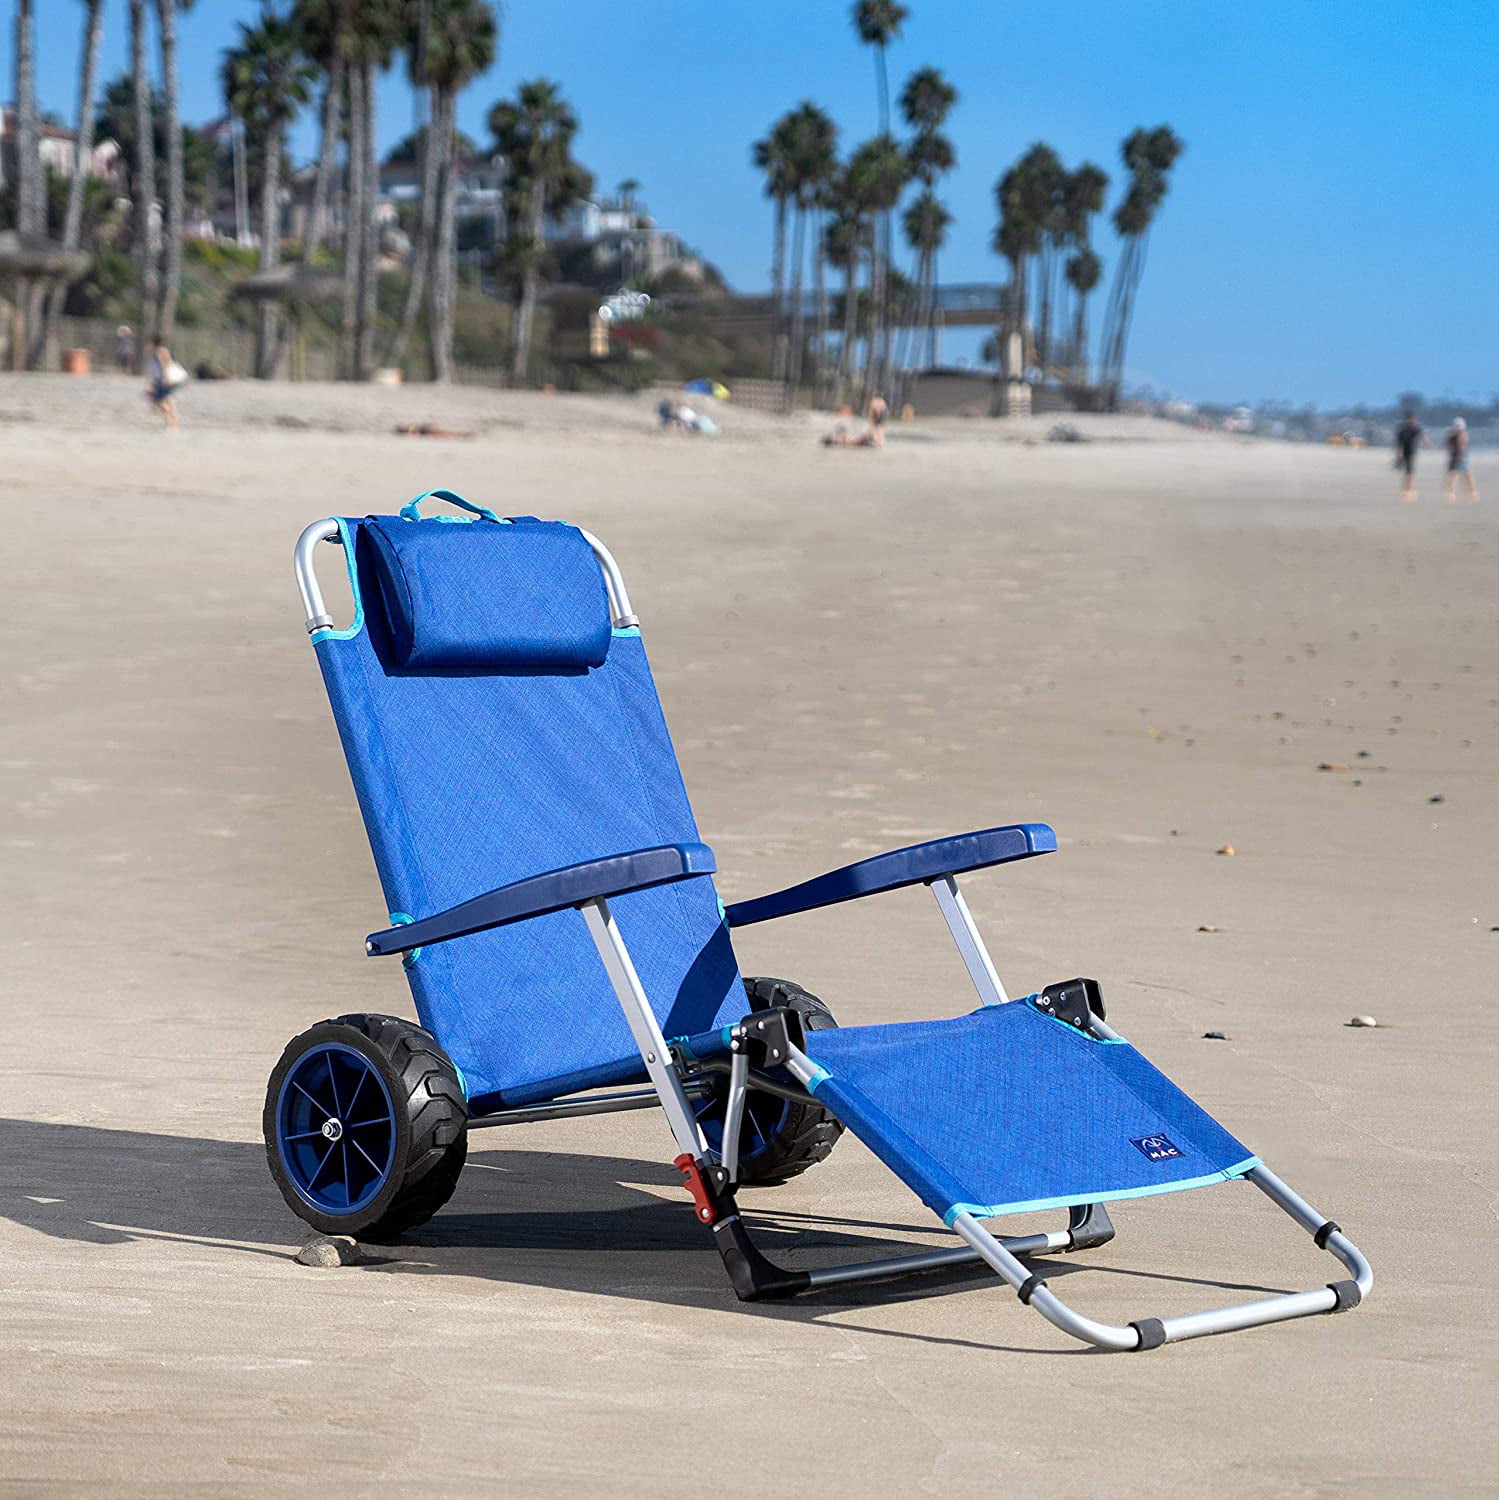  Beach Sunbathing Chair with Simple Decor